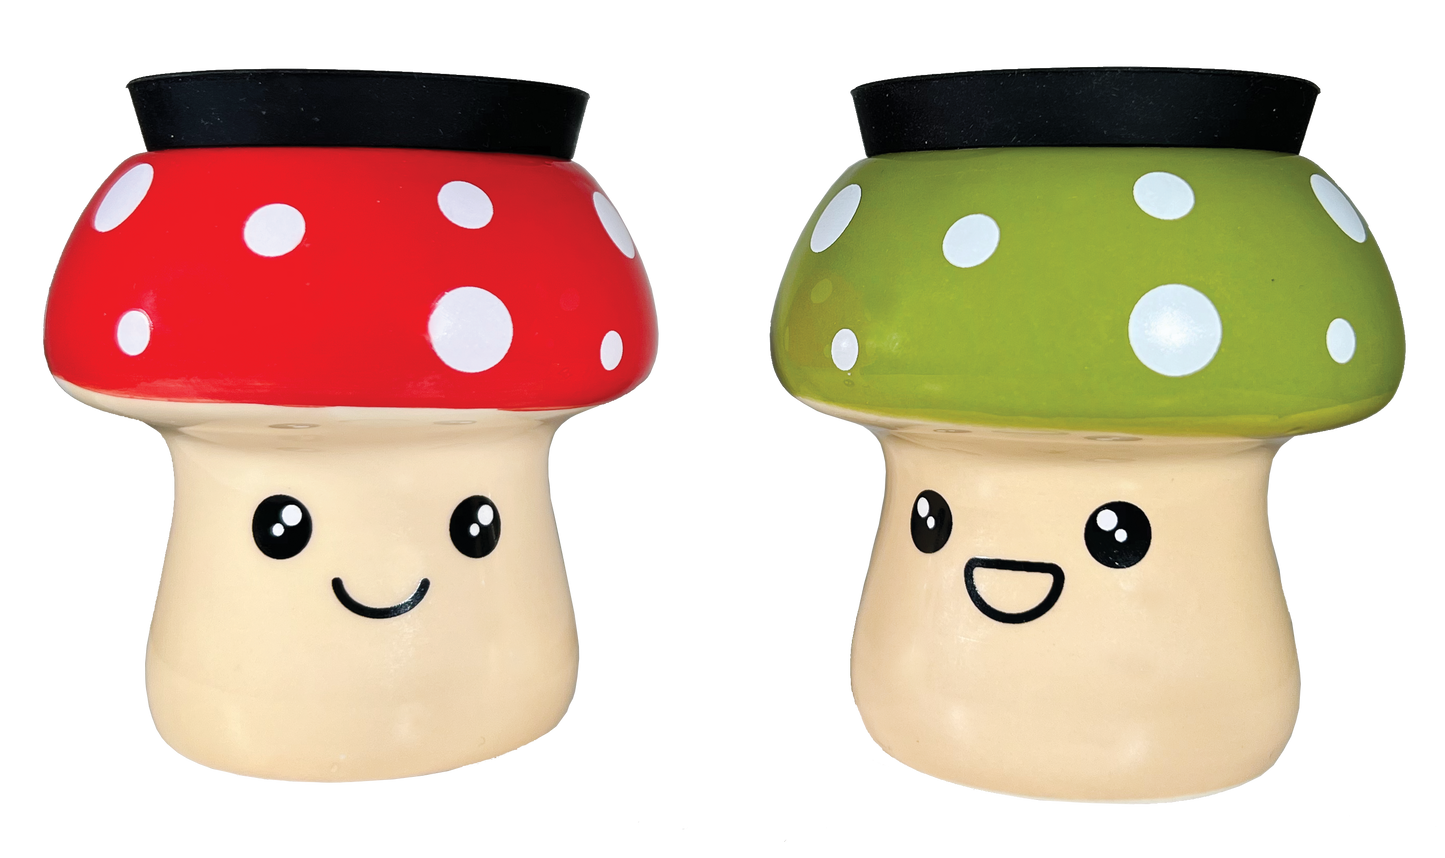 Mushroom Stash Jars